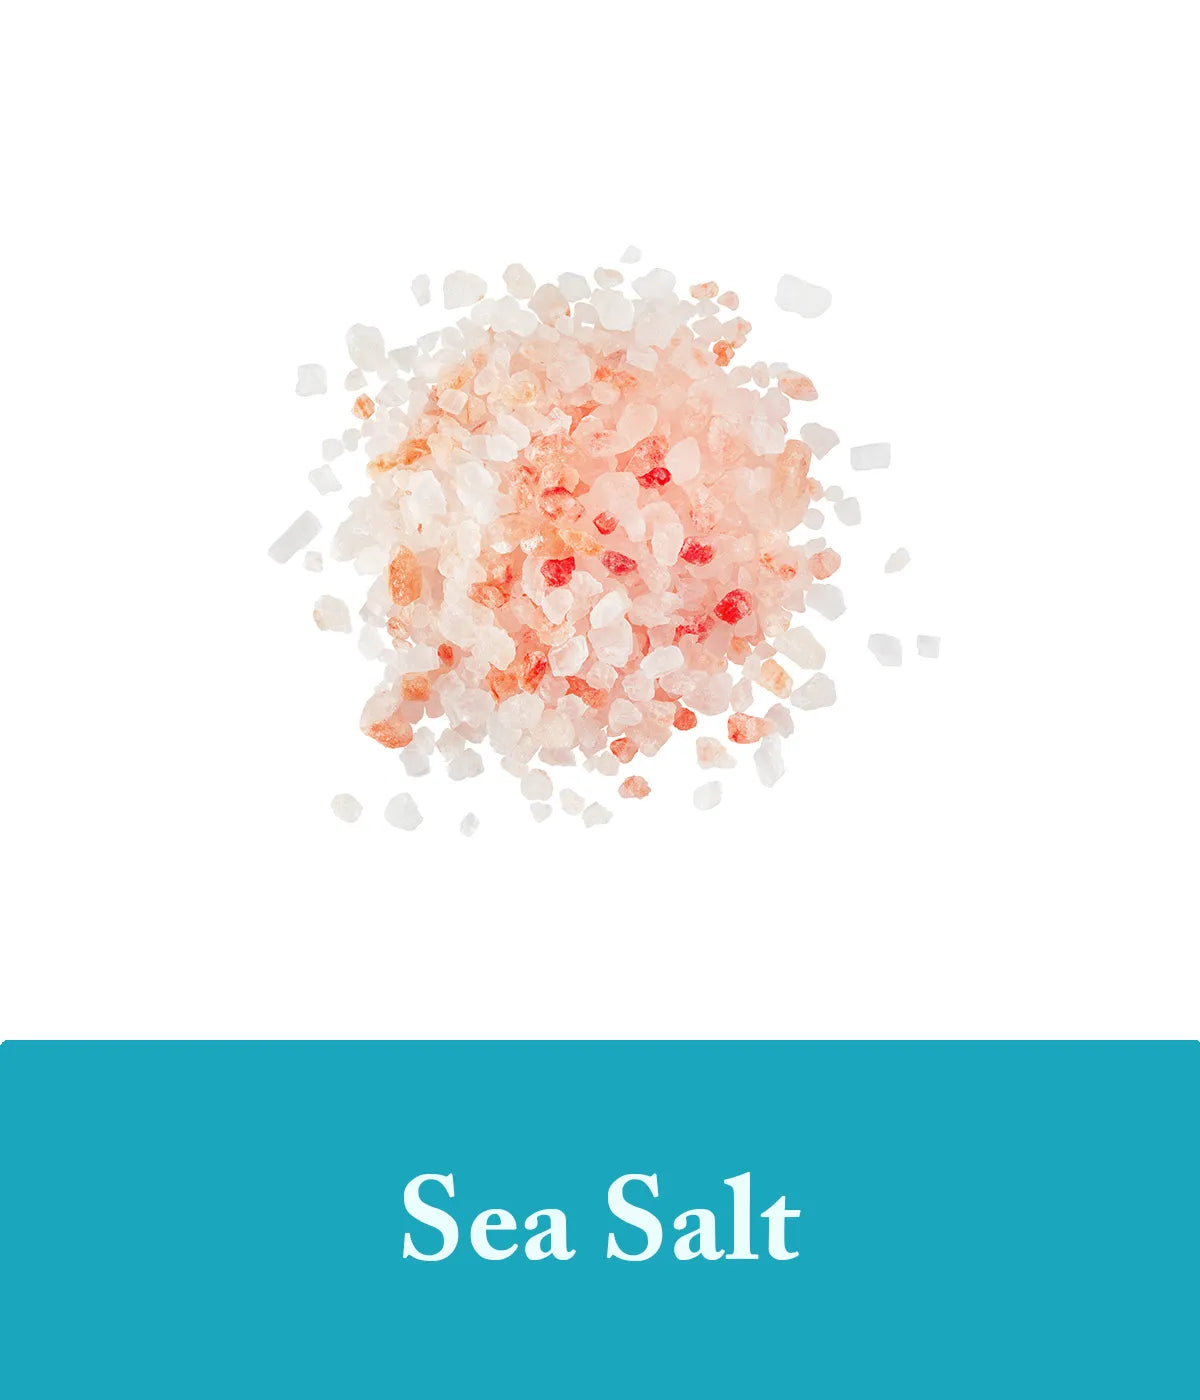 Sea Salt Ingredient